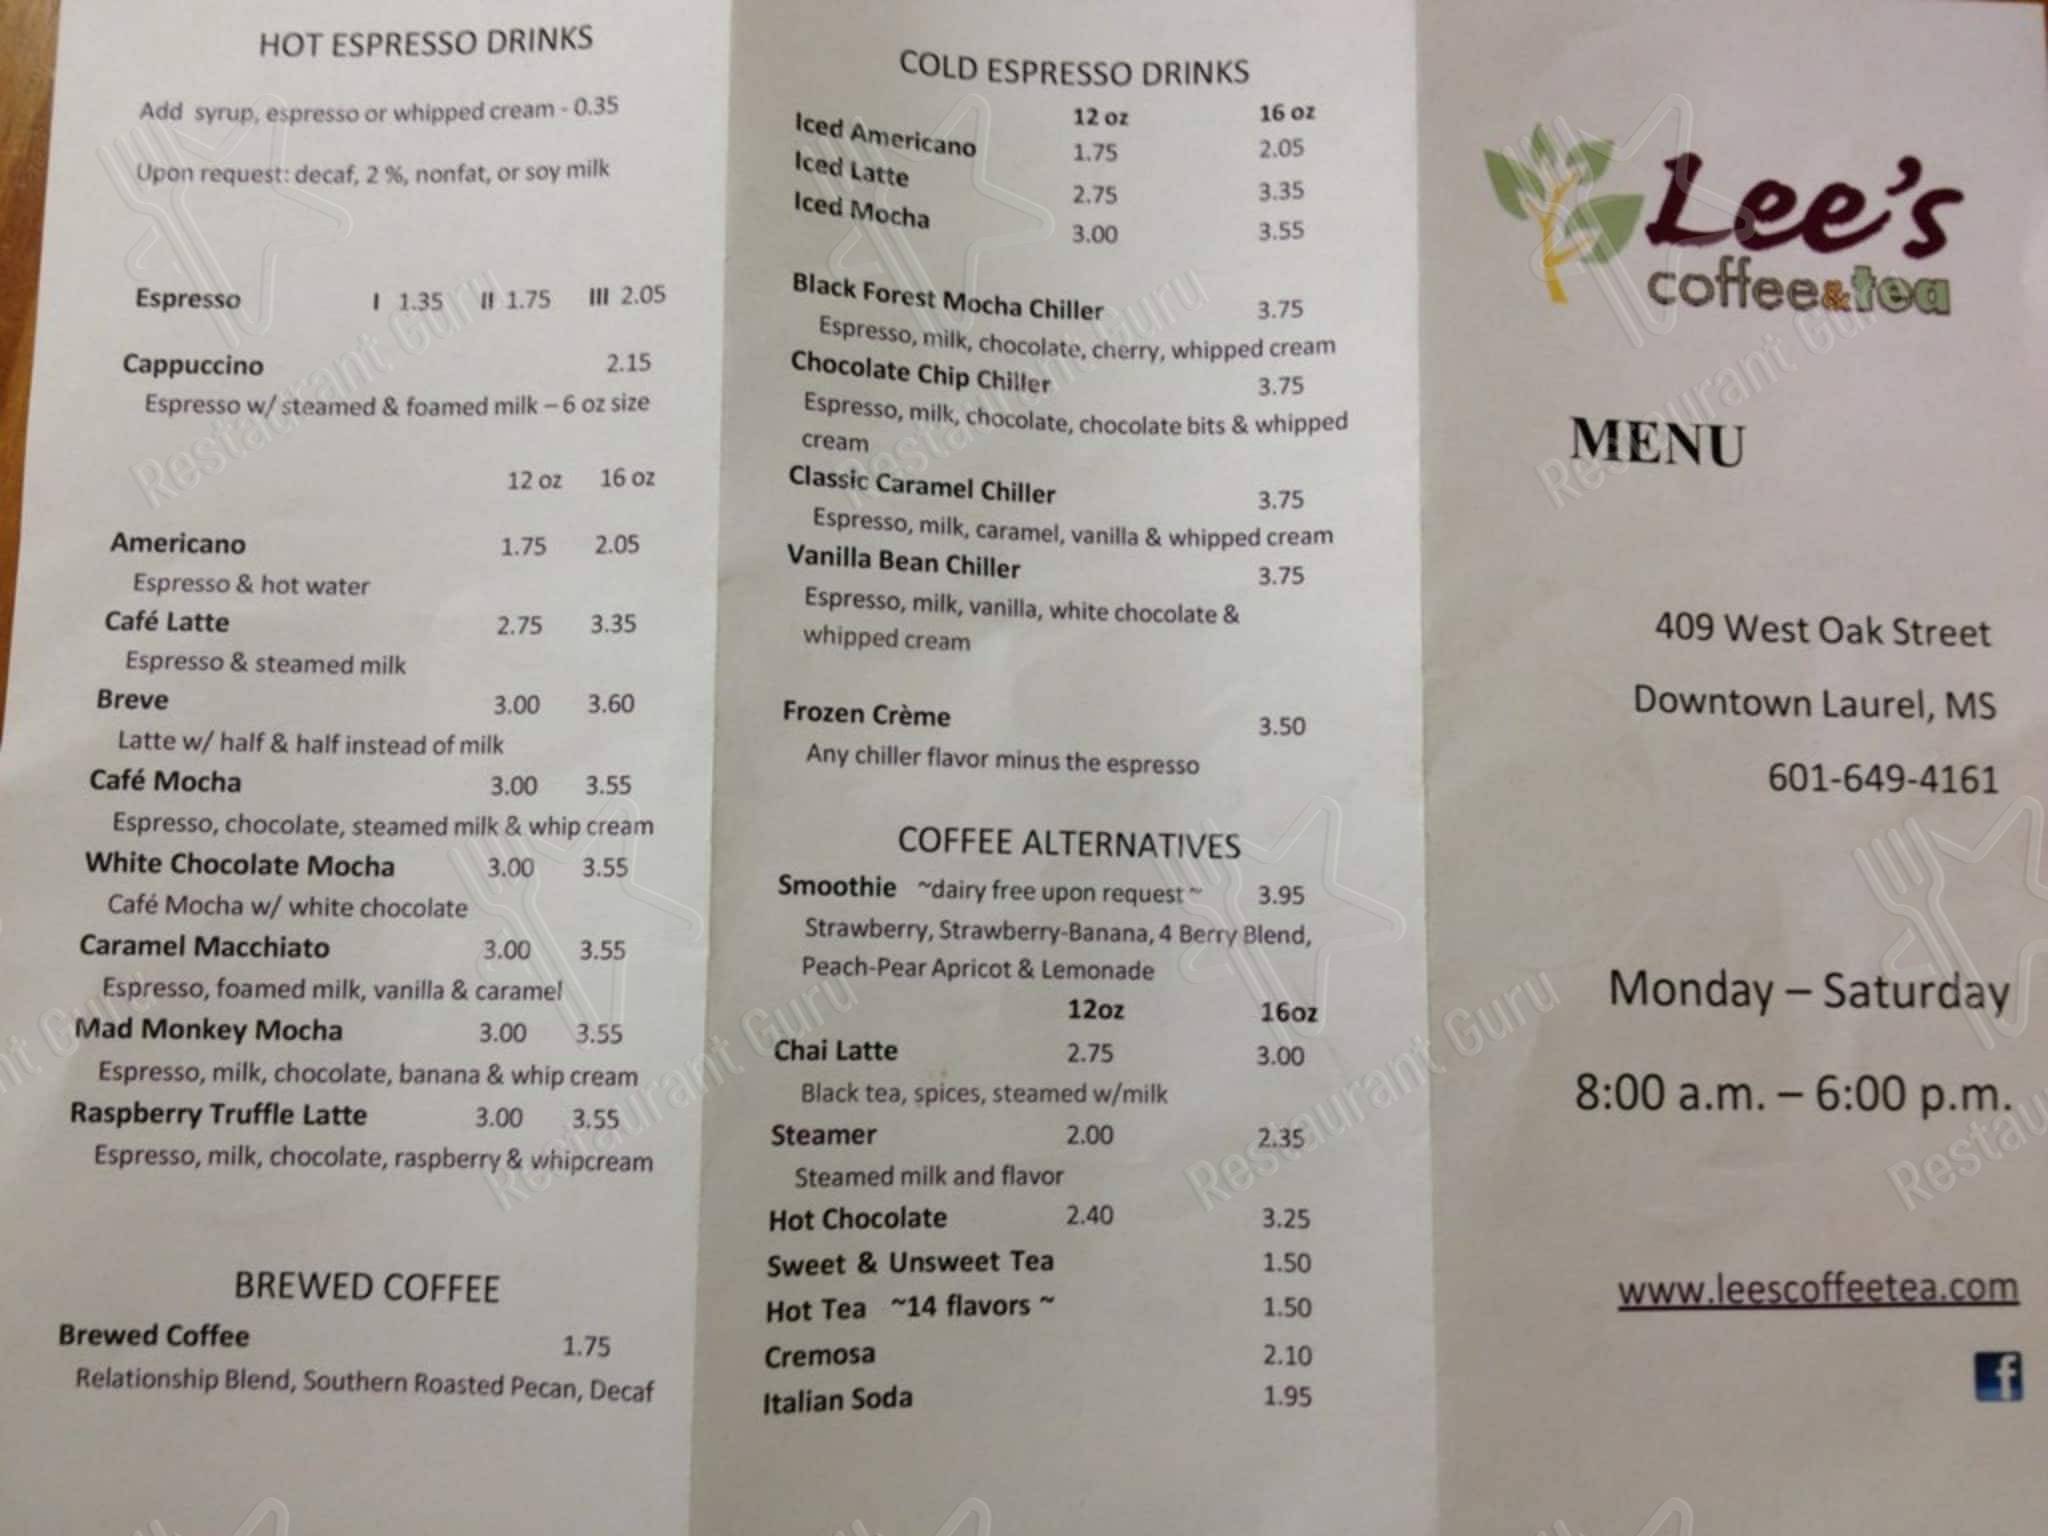 Menu at Lee's Coffee & Tea cafe, Laurel